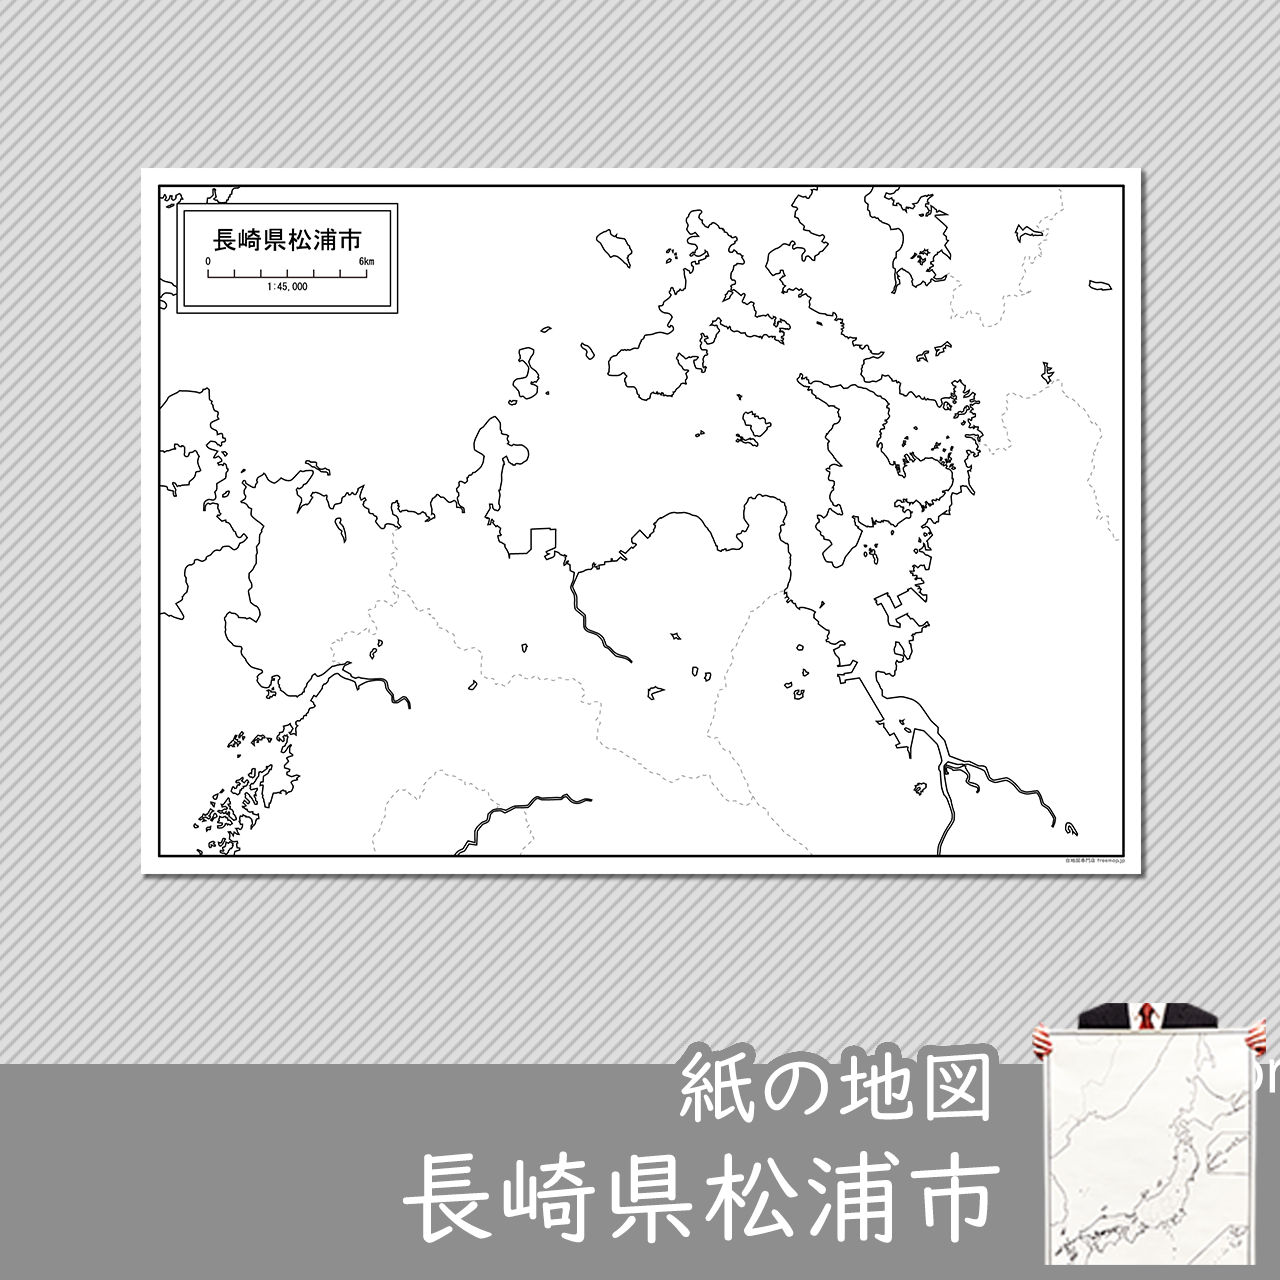 松浦市の紙の白地図のサムネイル